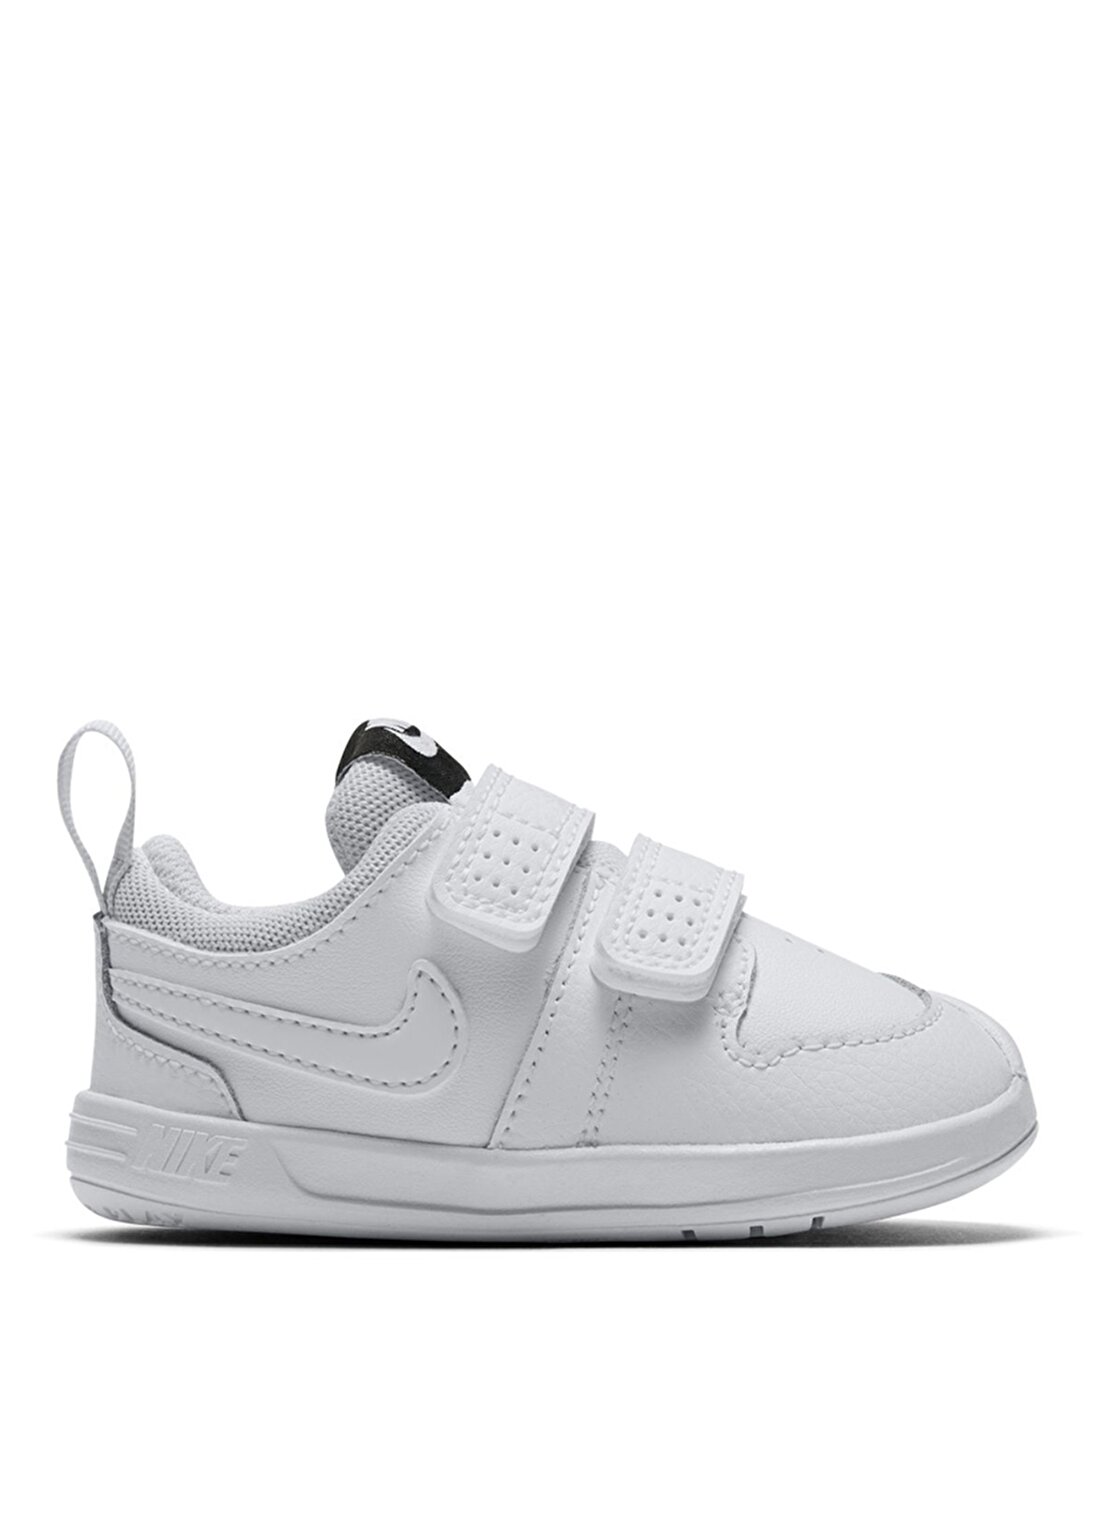 Nike Pico 5 Beyaz Bantlı Bebek Yürüyüş Ayakkabısı AR4162-100